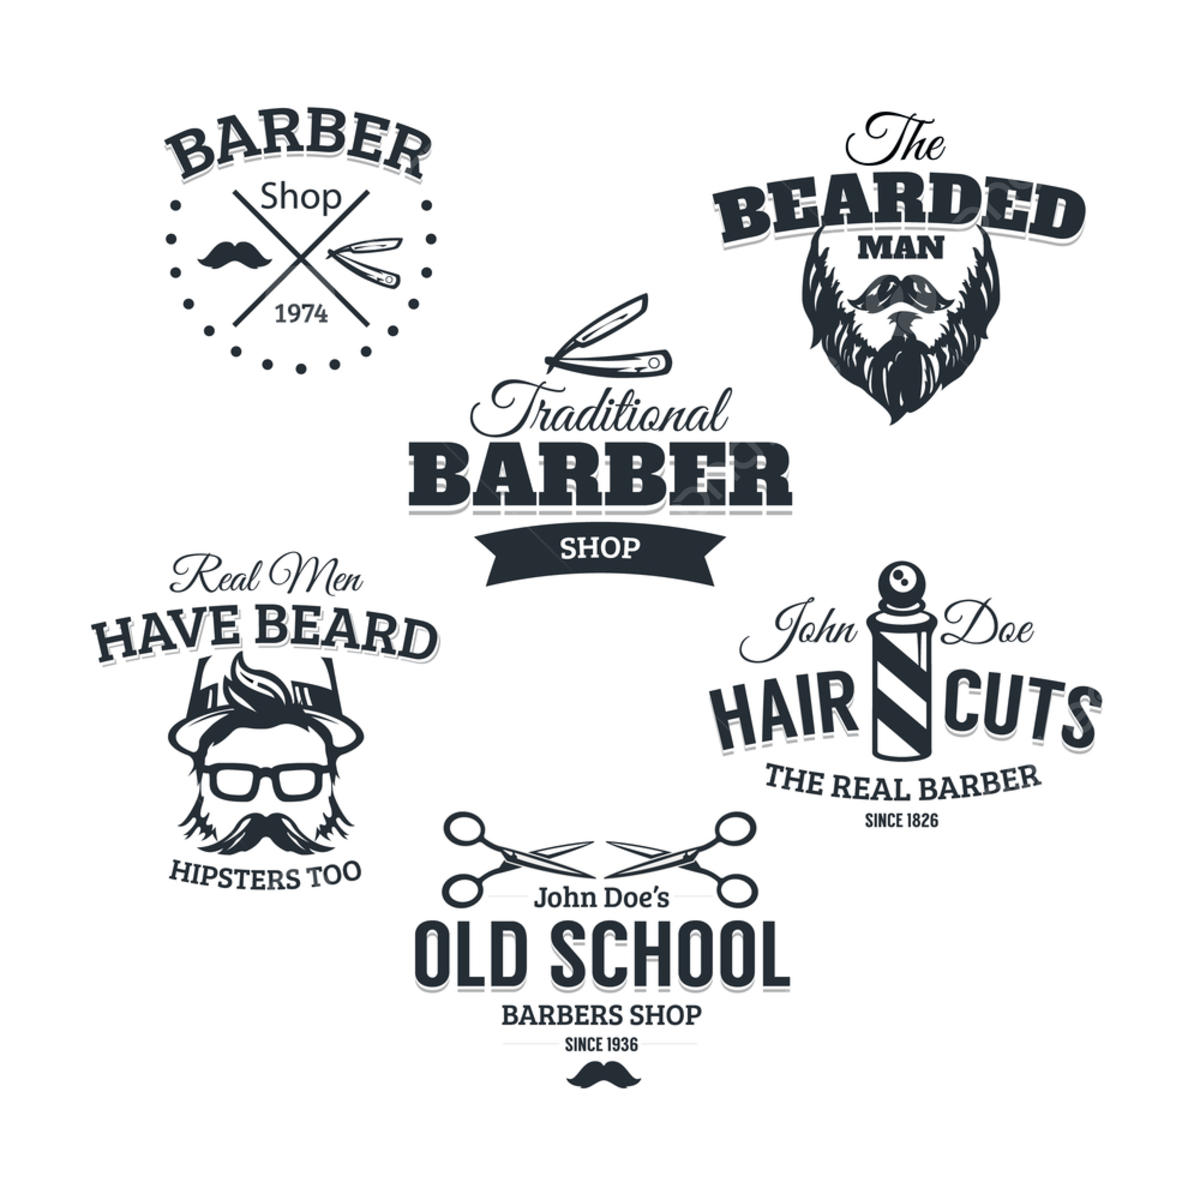 Barber school. Логотип в стиле барбершоп. Логотип в стиле олдскул. Эмблемы барбершопов. Логотип барбер School.